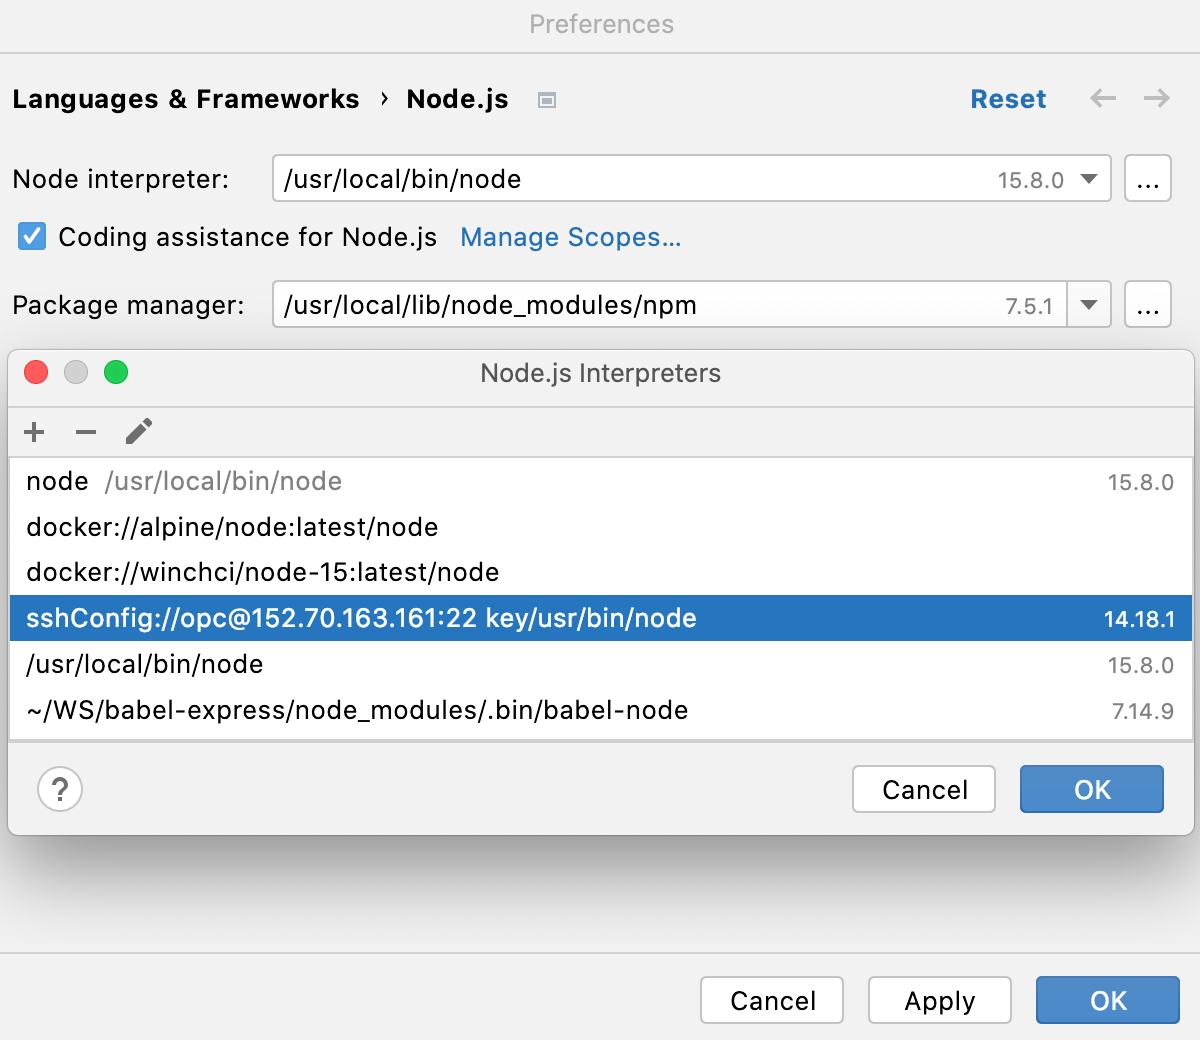 远程解释器对话框：通过 SSH 添加到列表中的新 Node.js 解释器